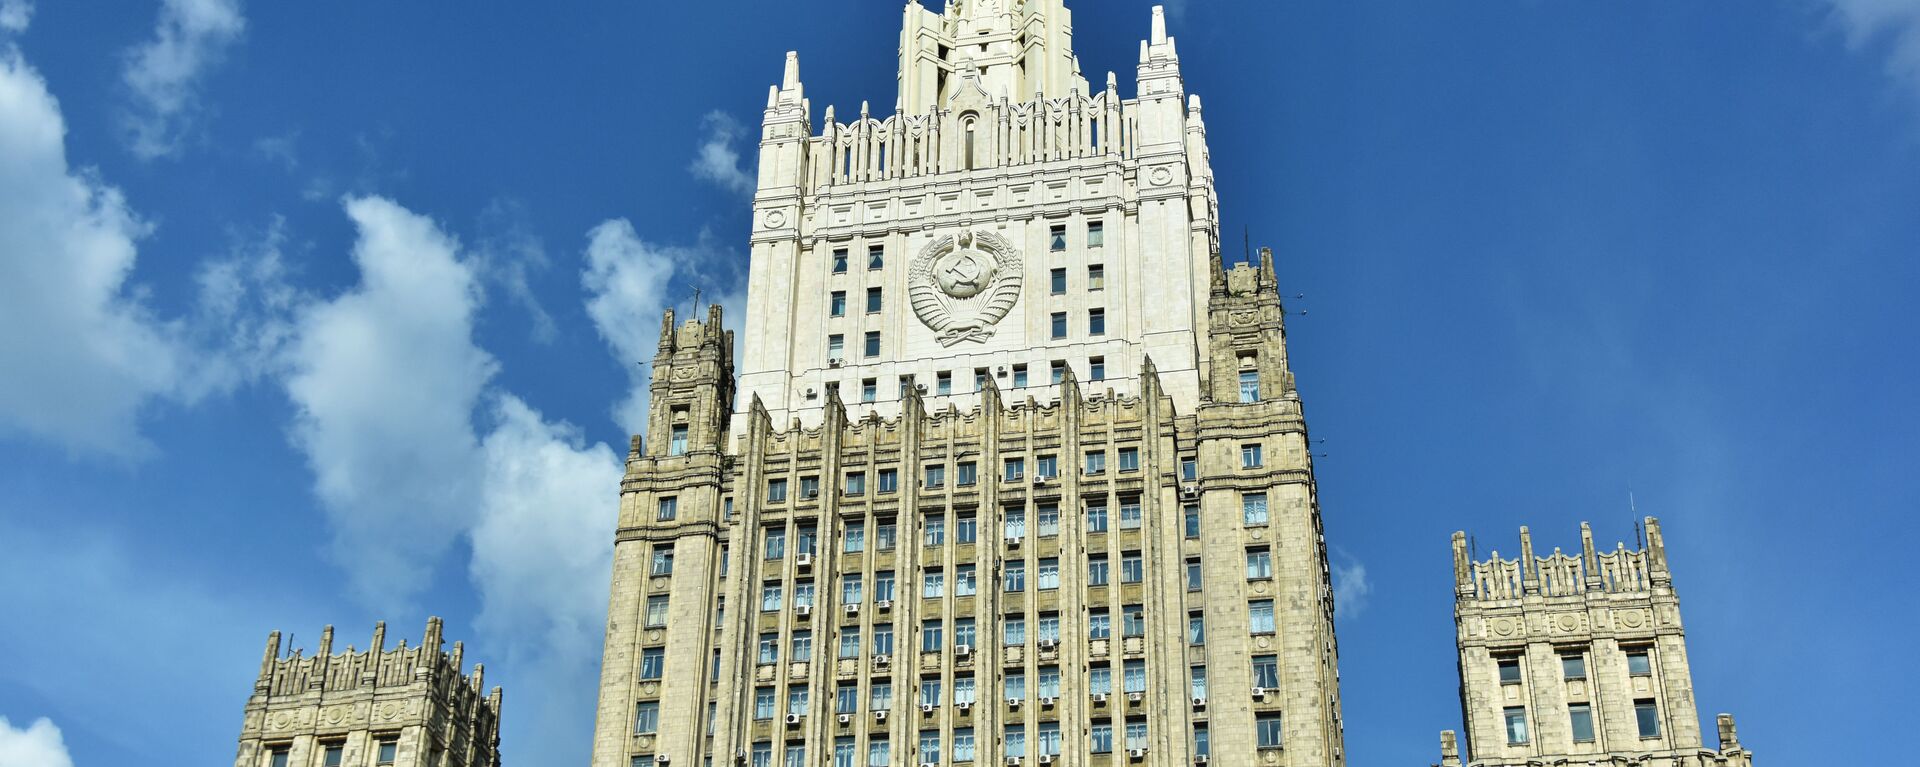 Зграда Министарства спољних послова Русије у Москви - Sputnik Србија, 1920, 19.04.2021